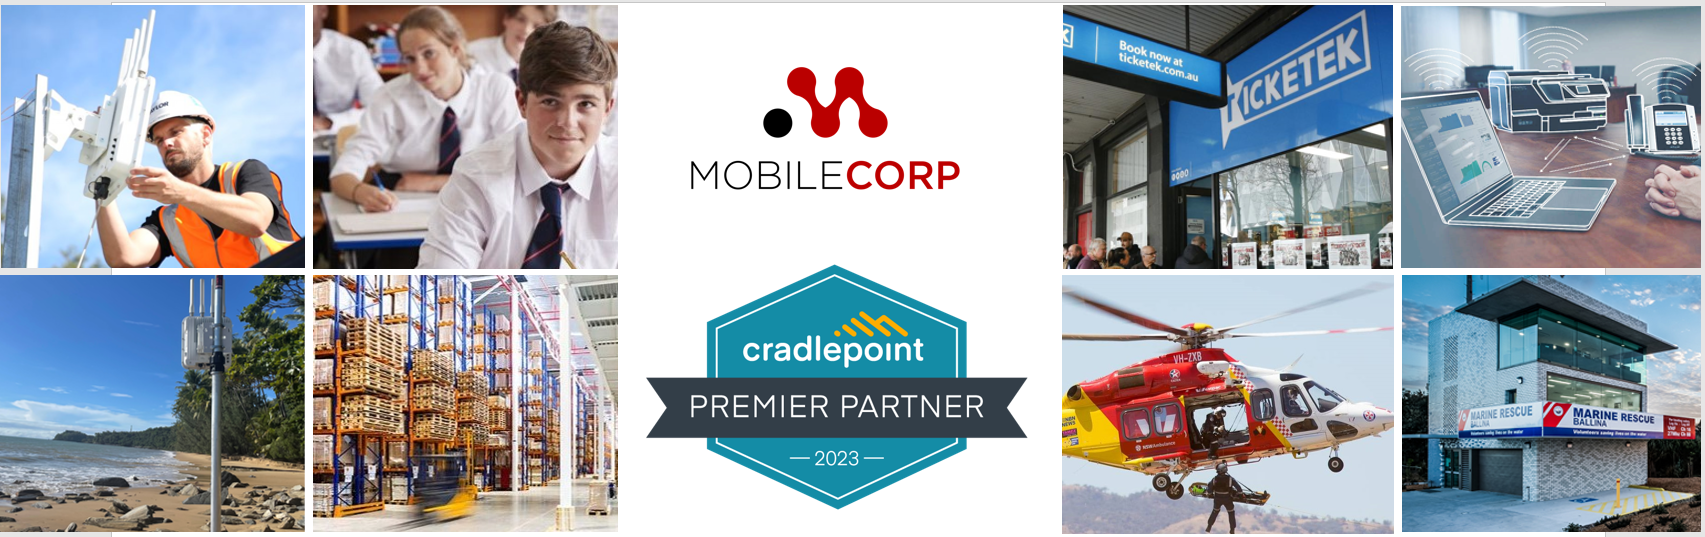 Cradlepoint partner web page banner